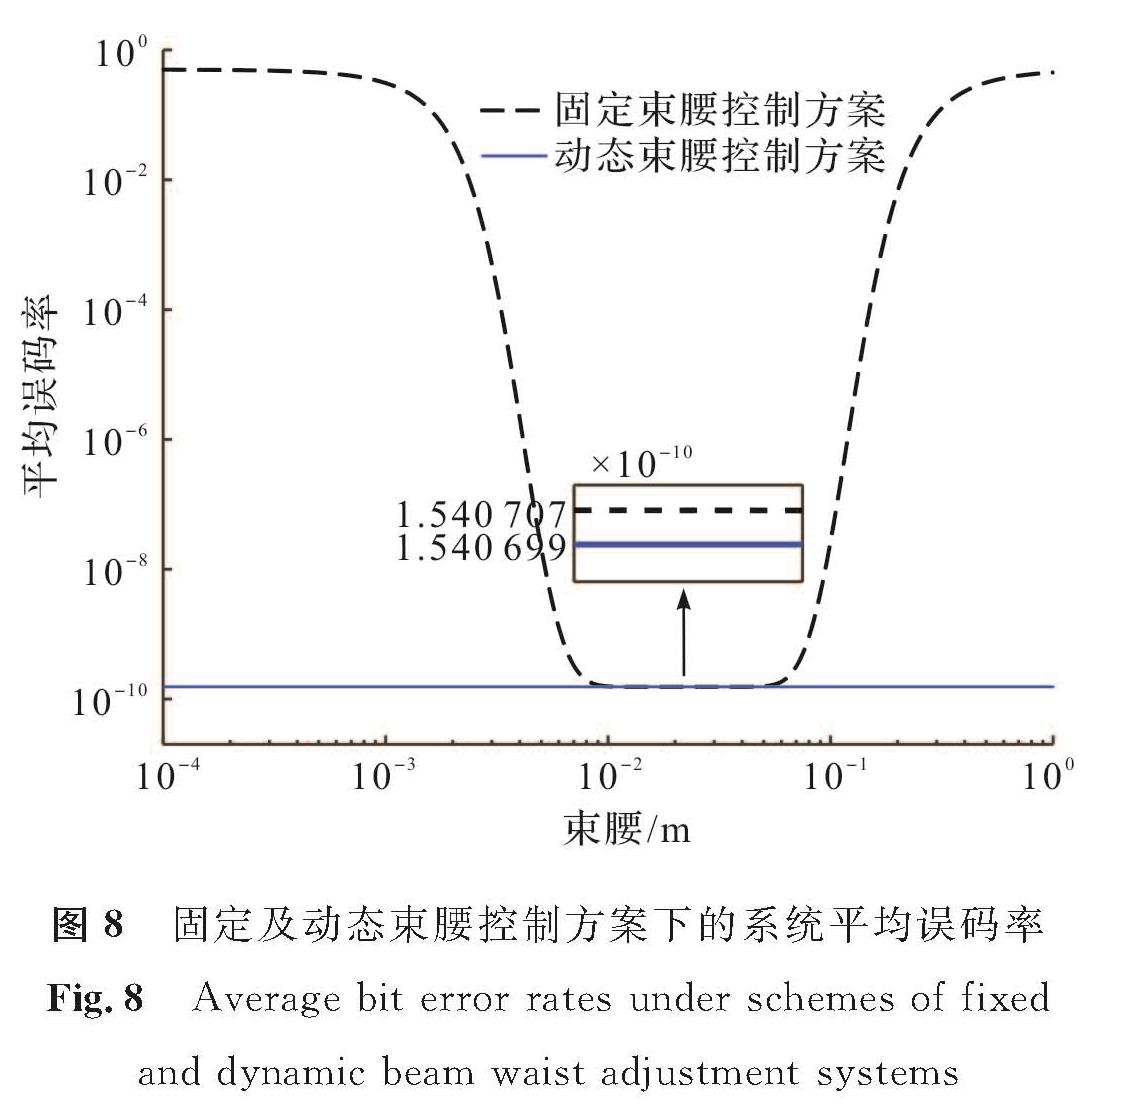 图8 固定及动态束腰控制方案下的系统平均误码率<br/>Fig.8 Average bit error rates under schemes of fixed and dynamic beam waist adjustment systems